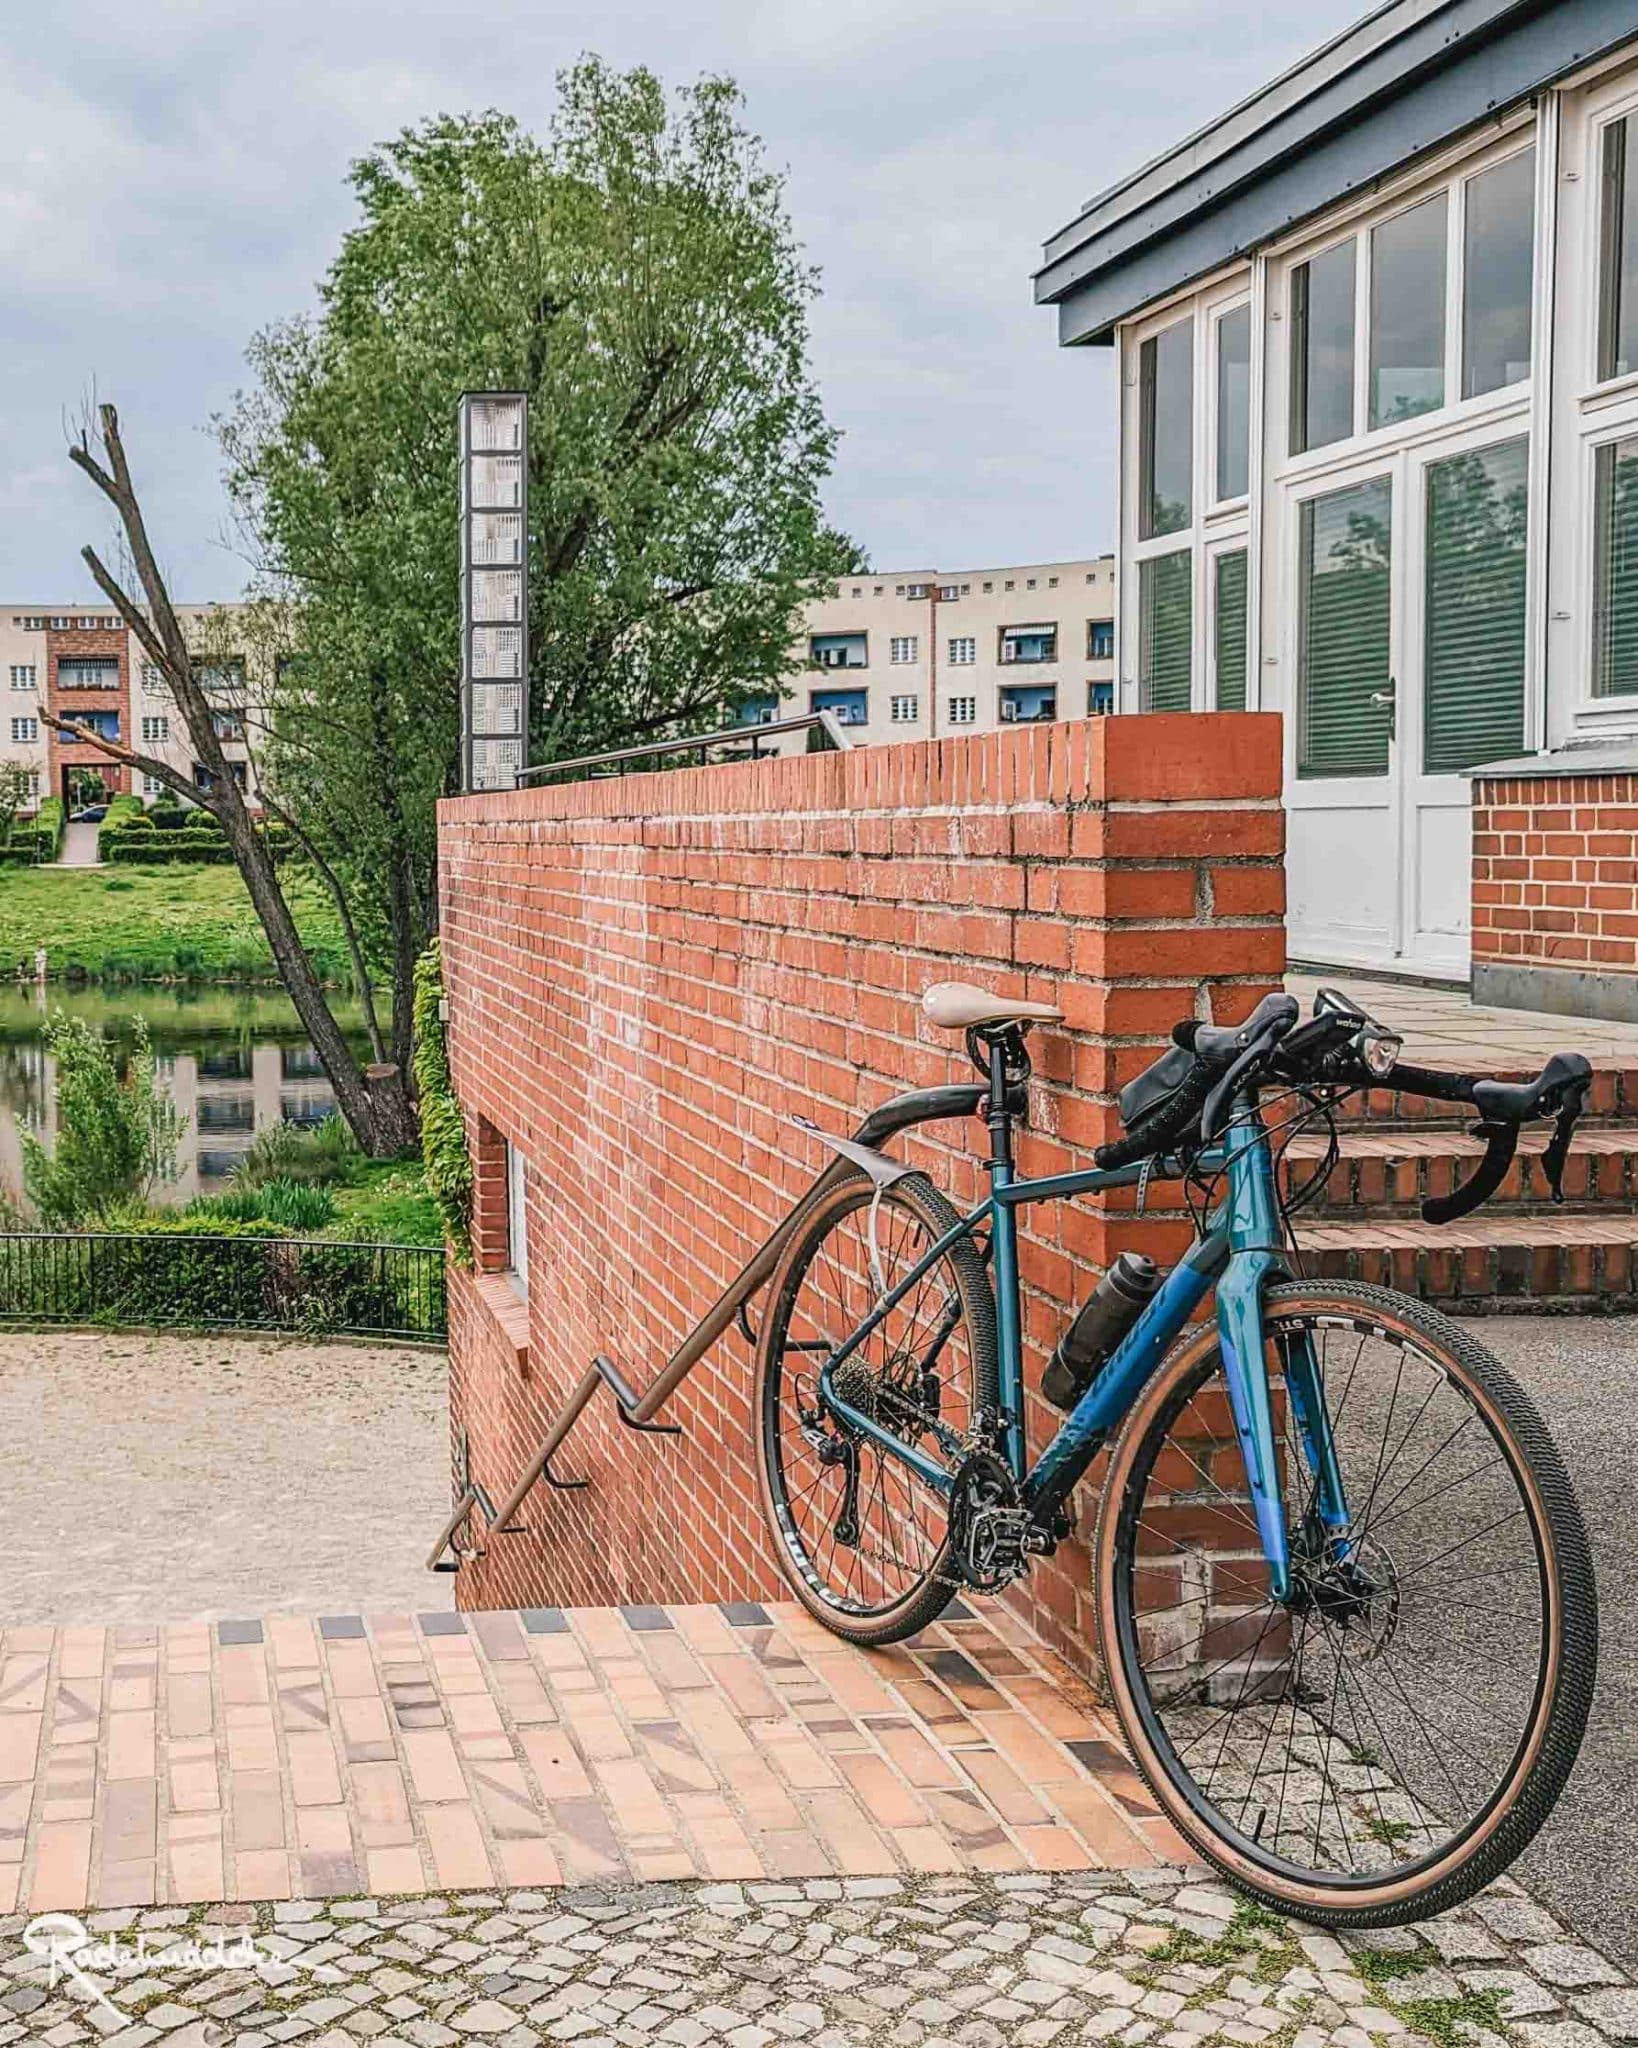 Fahrrad an eine Backsteinmauer gelehnt in der Stadt